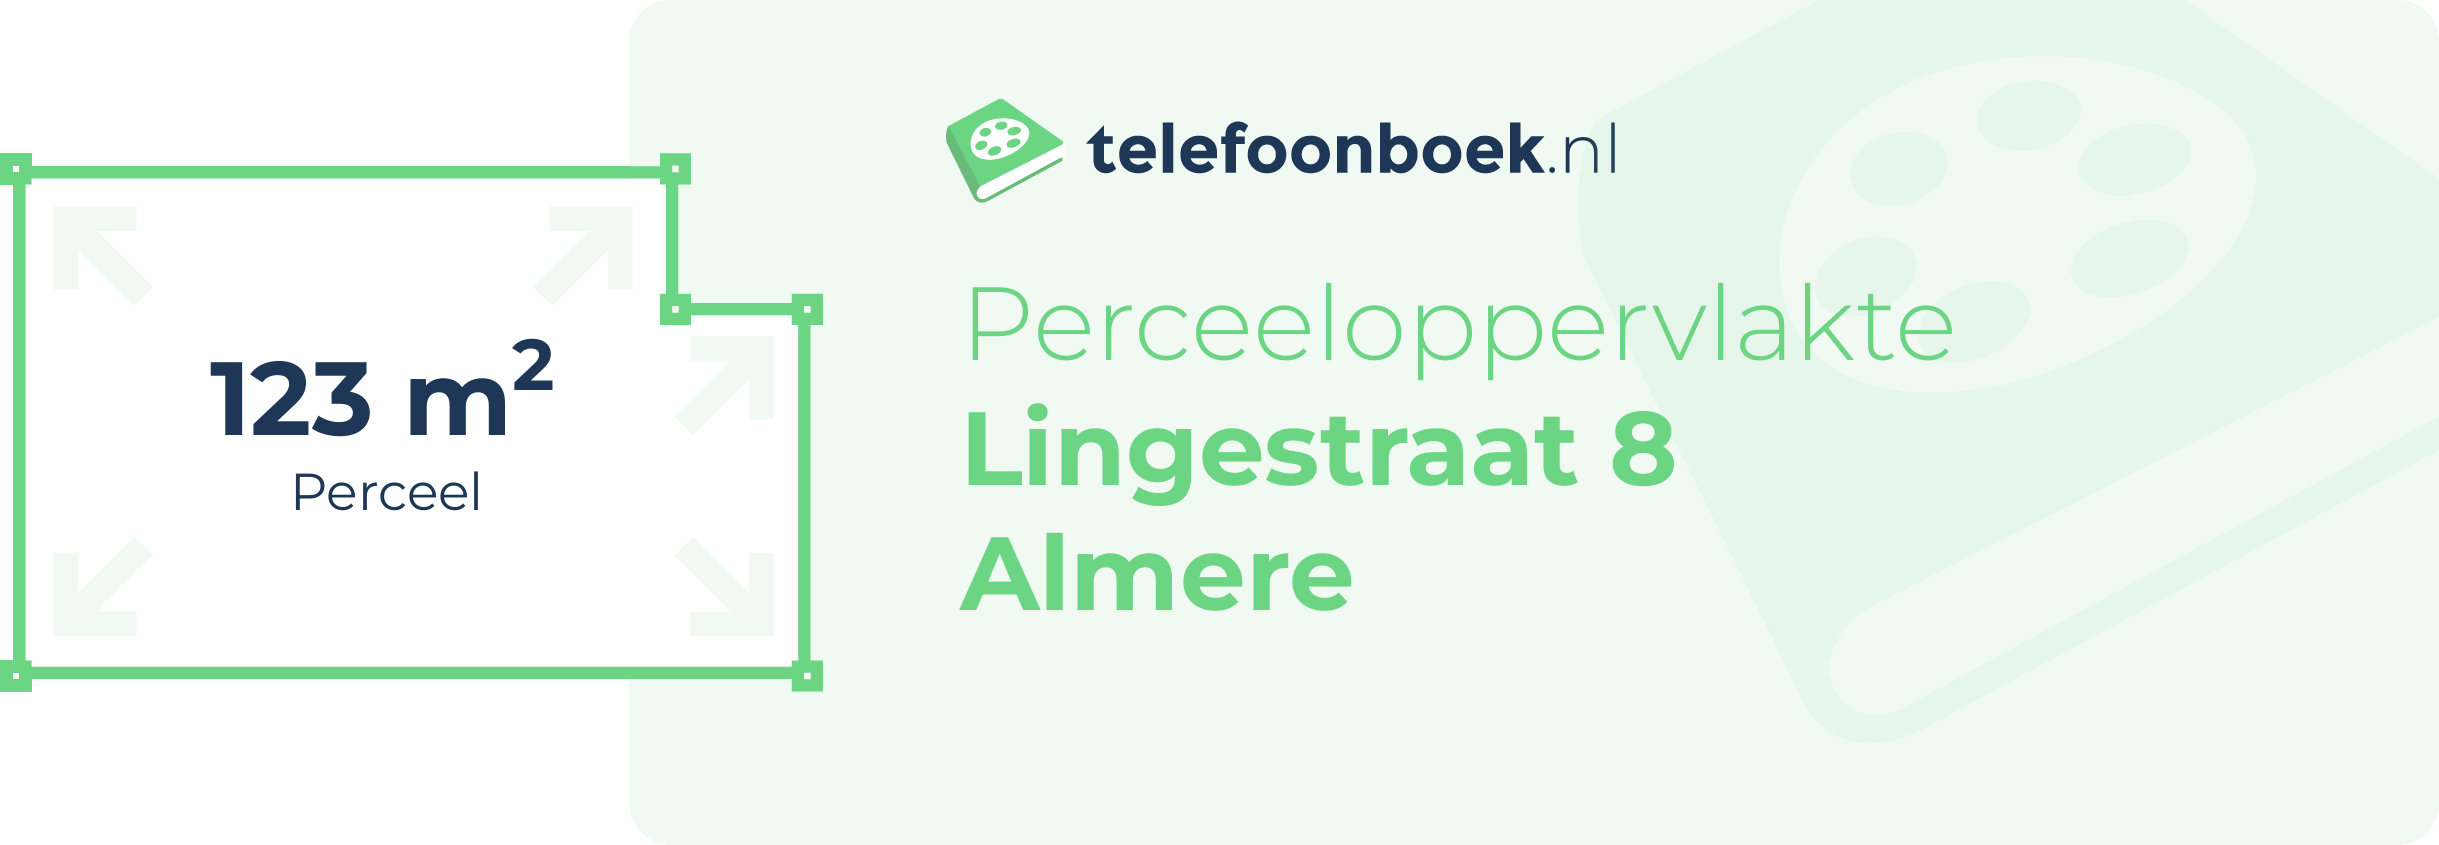 Perceeloppervlakte Lingestraat 8 Almere